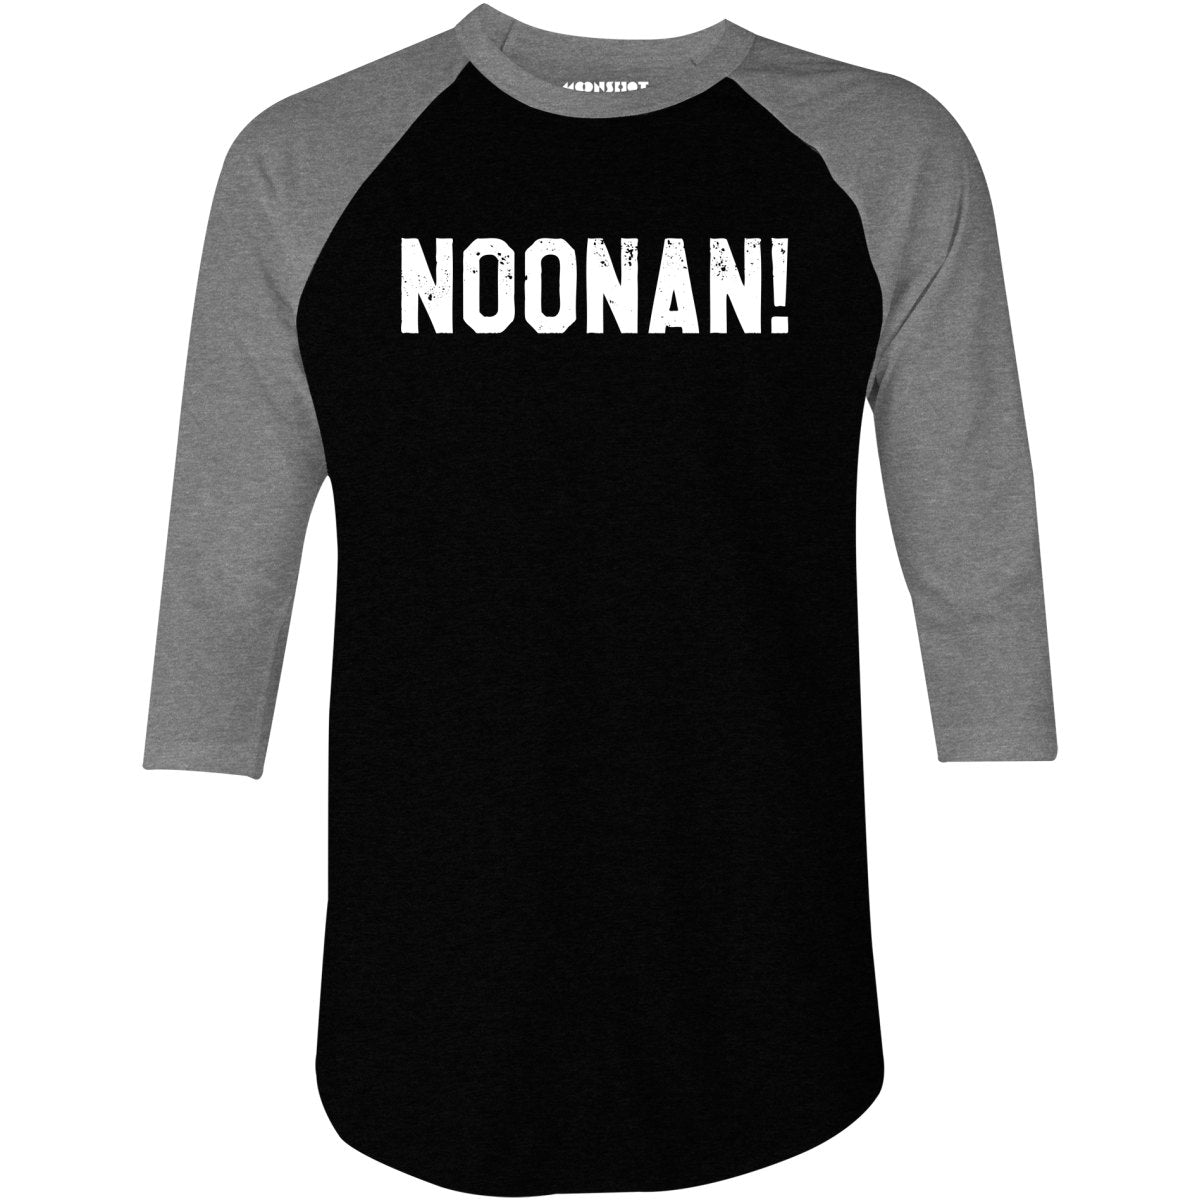 Noonan! - 3/4 Sleeve Raglan T-Shirt